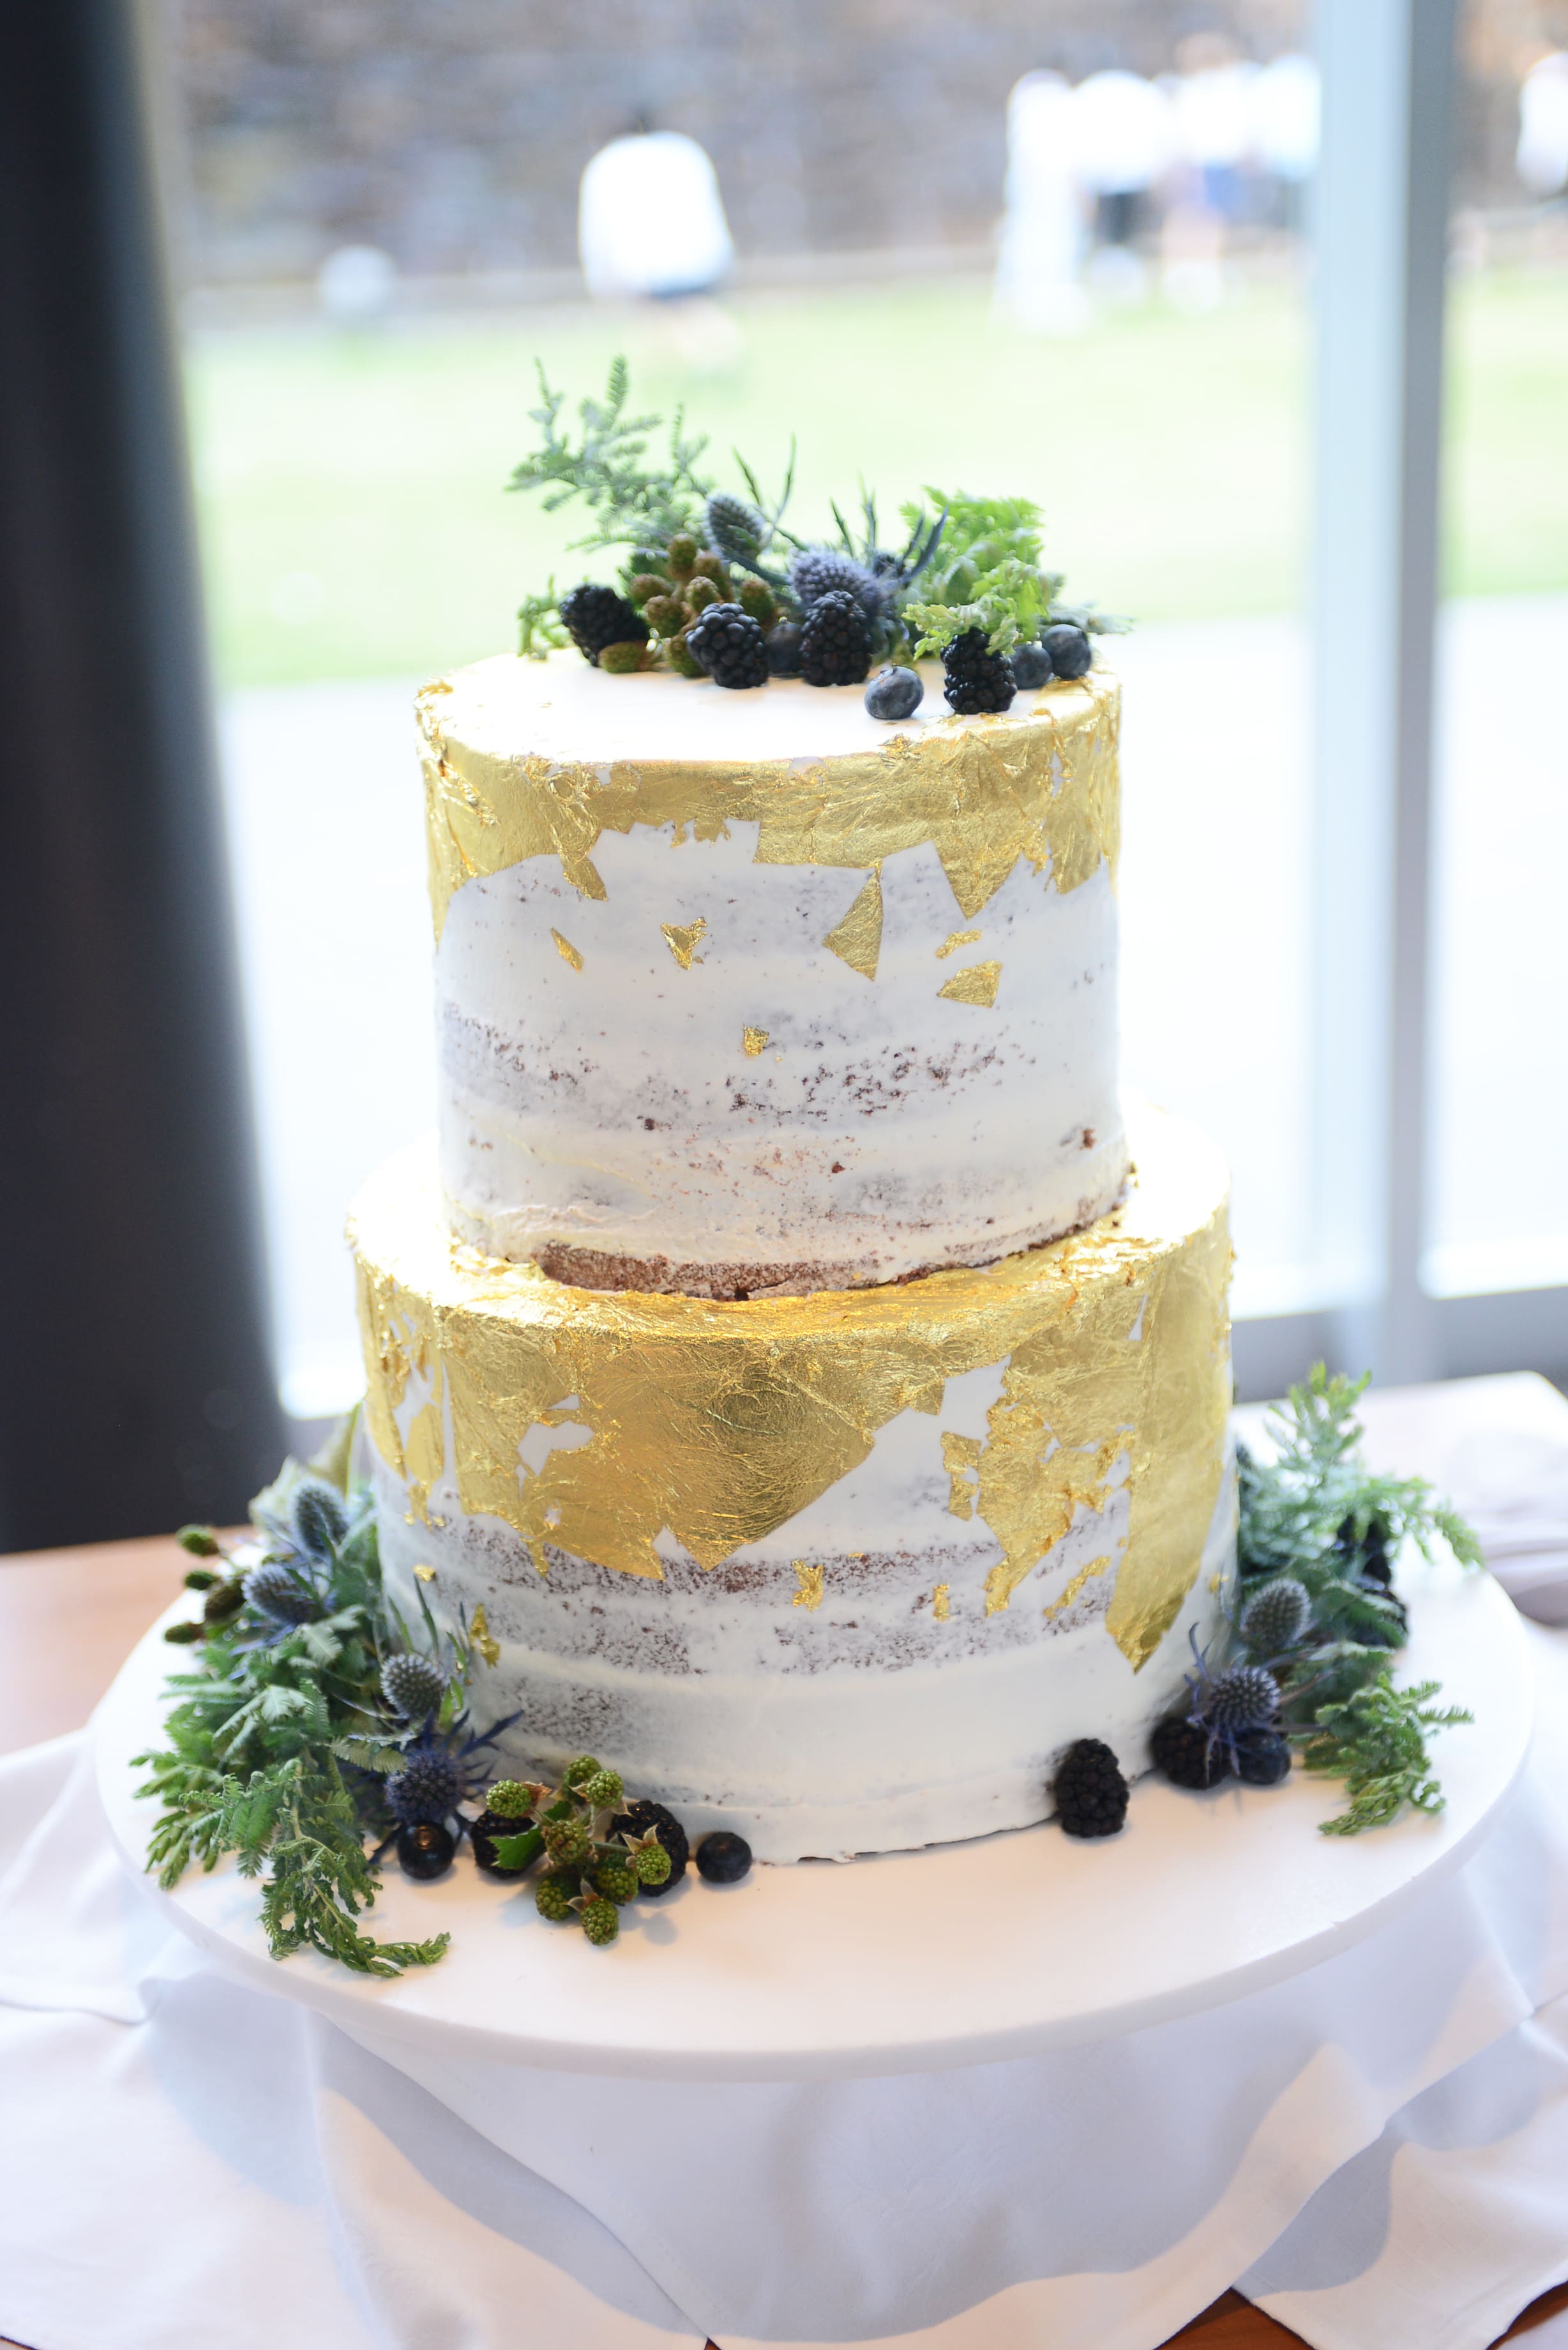 縦長の2段ケーキがオシャレ 公式 結婚式場 四日市市 アクアリュクス 三重県四日市駅